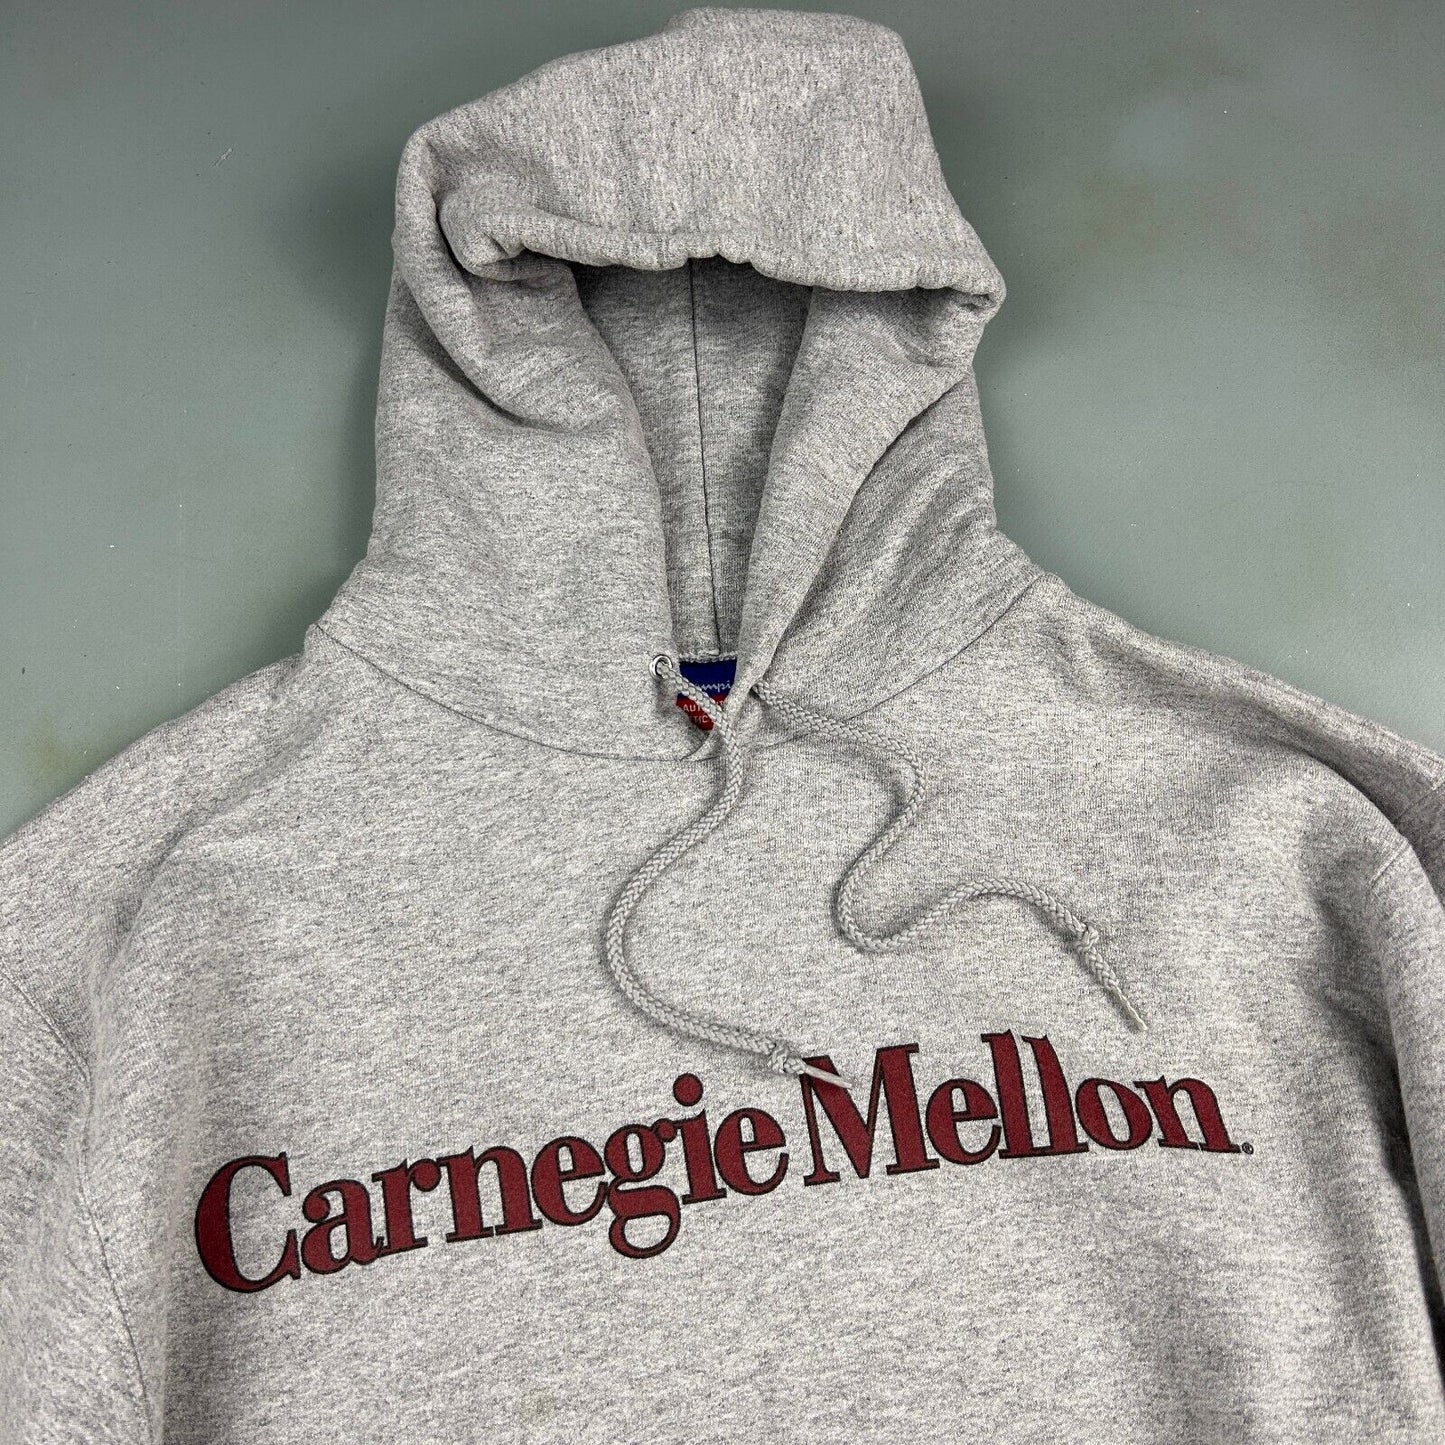 VINTAGE Champion Carnegie Mellon Hoodie Sweater sz Medium Adult